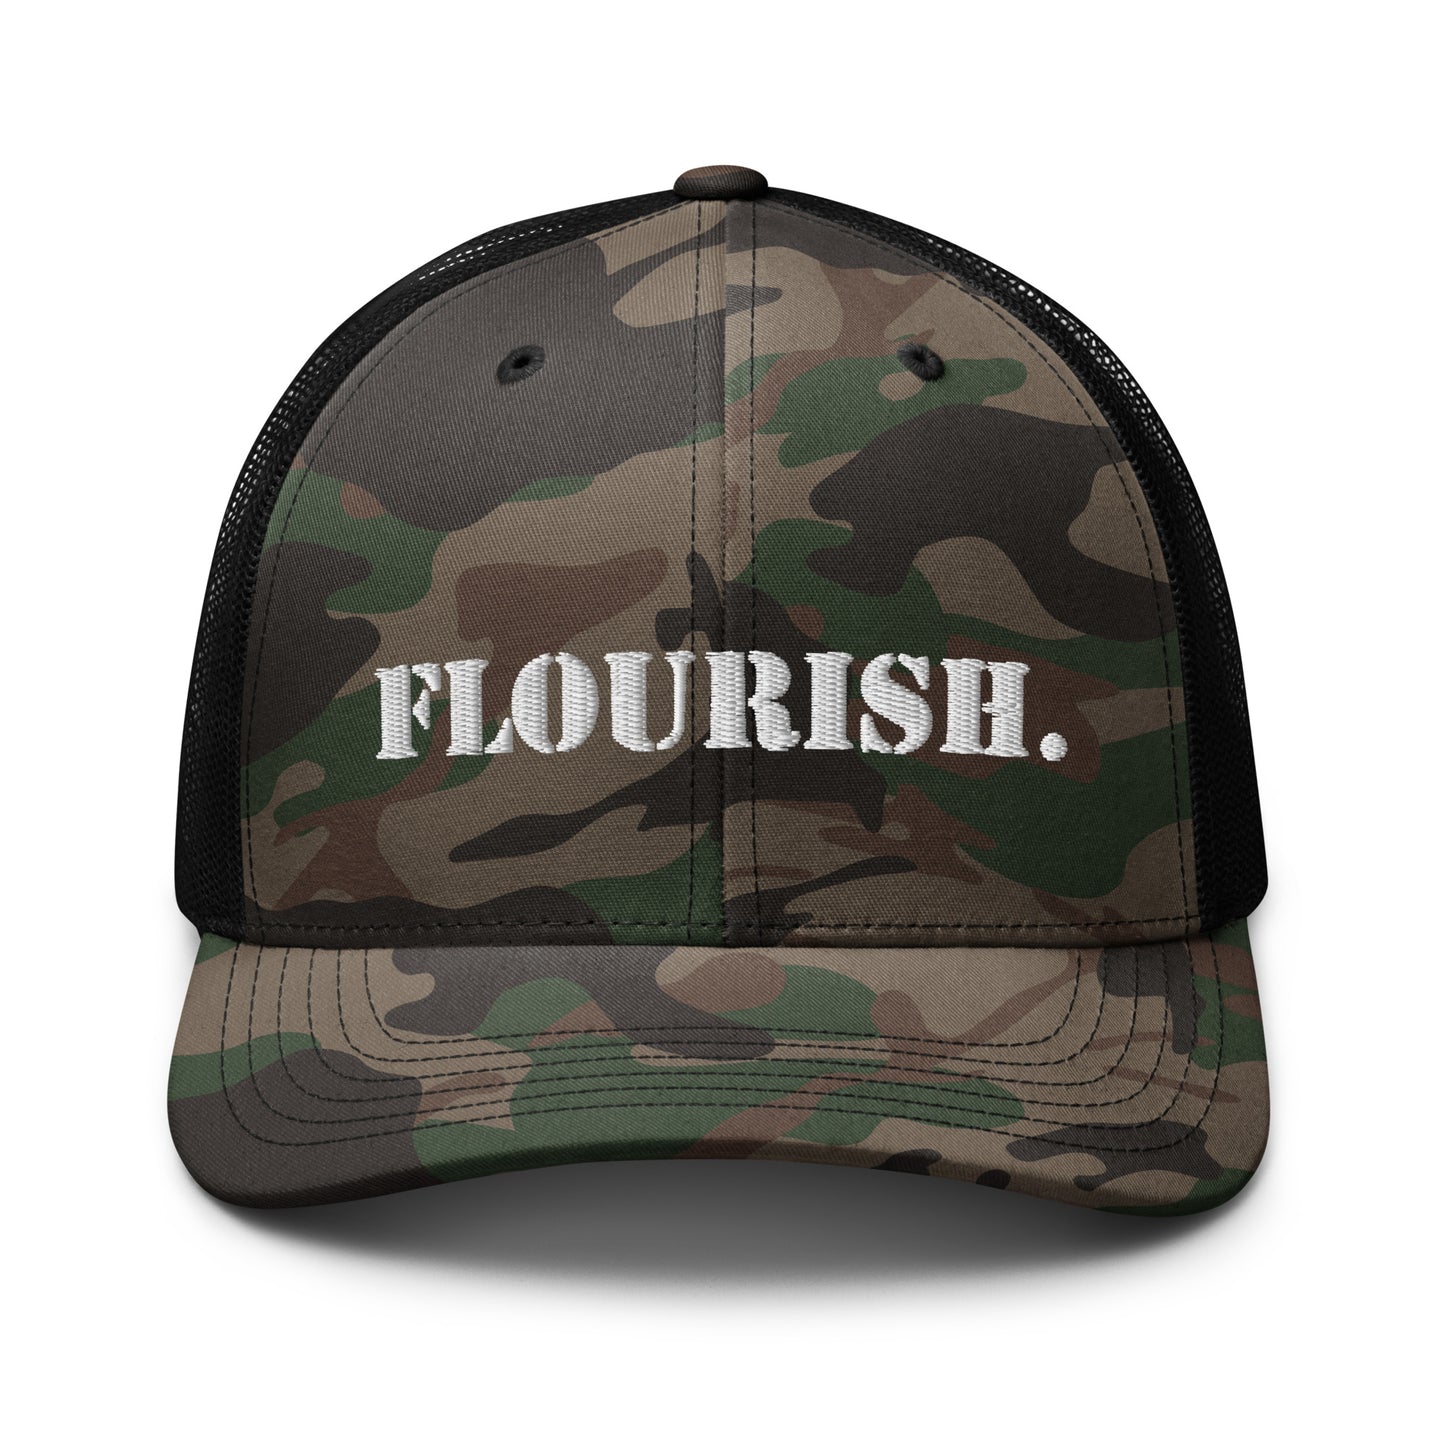 "Flourish." Camouflage Trucker Hat